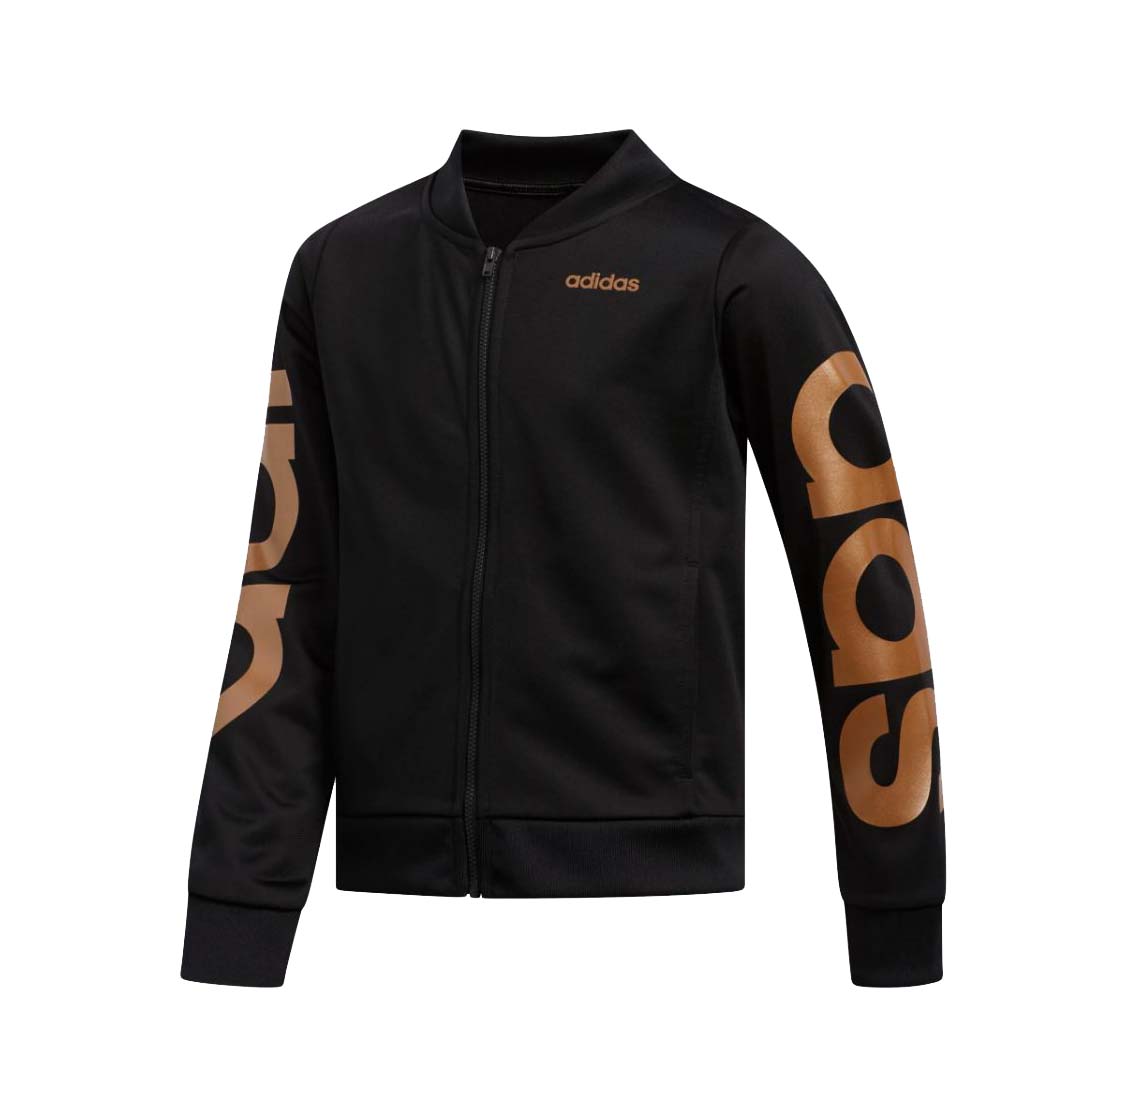 adidas track jacket ebay